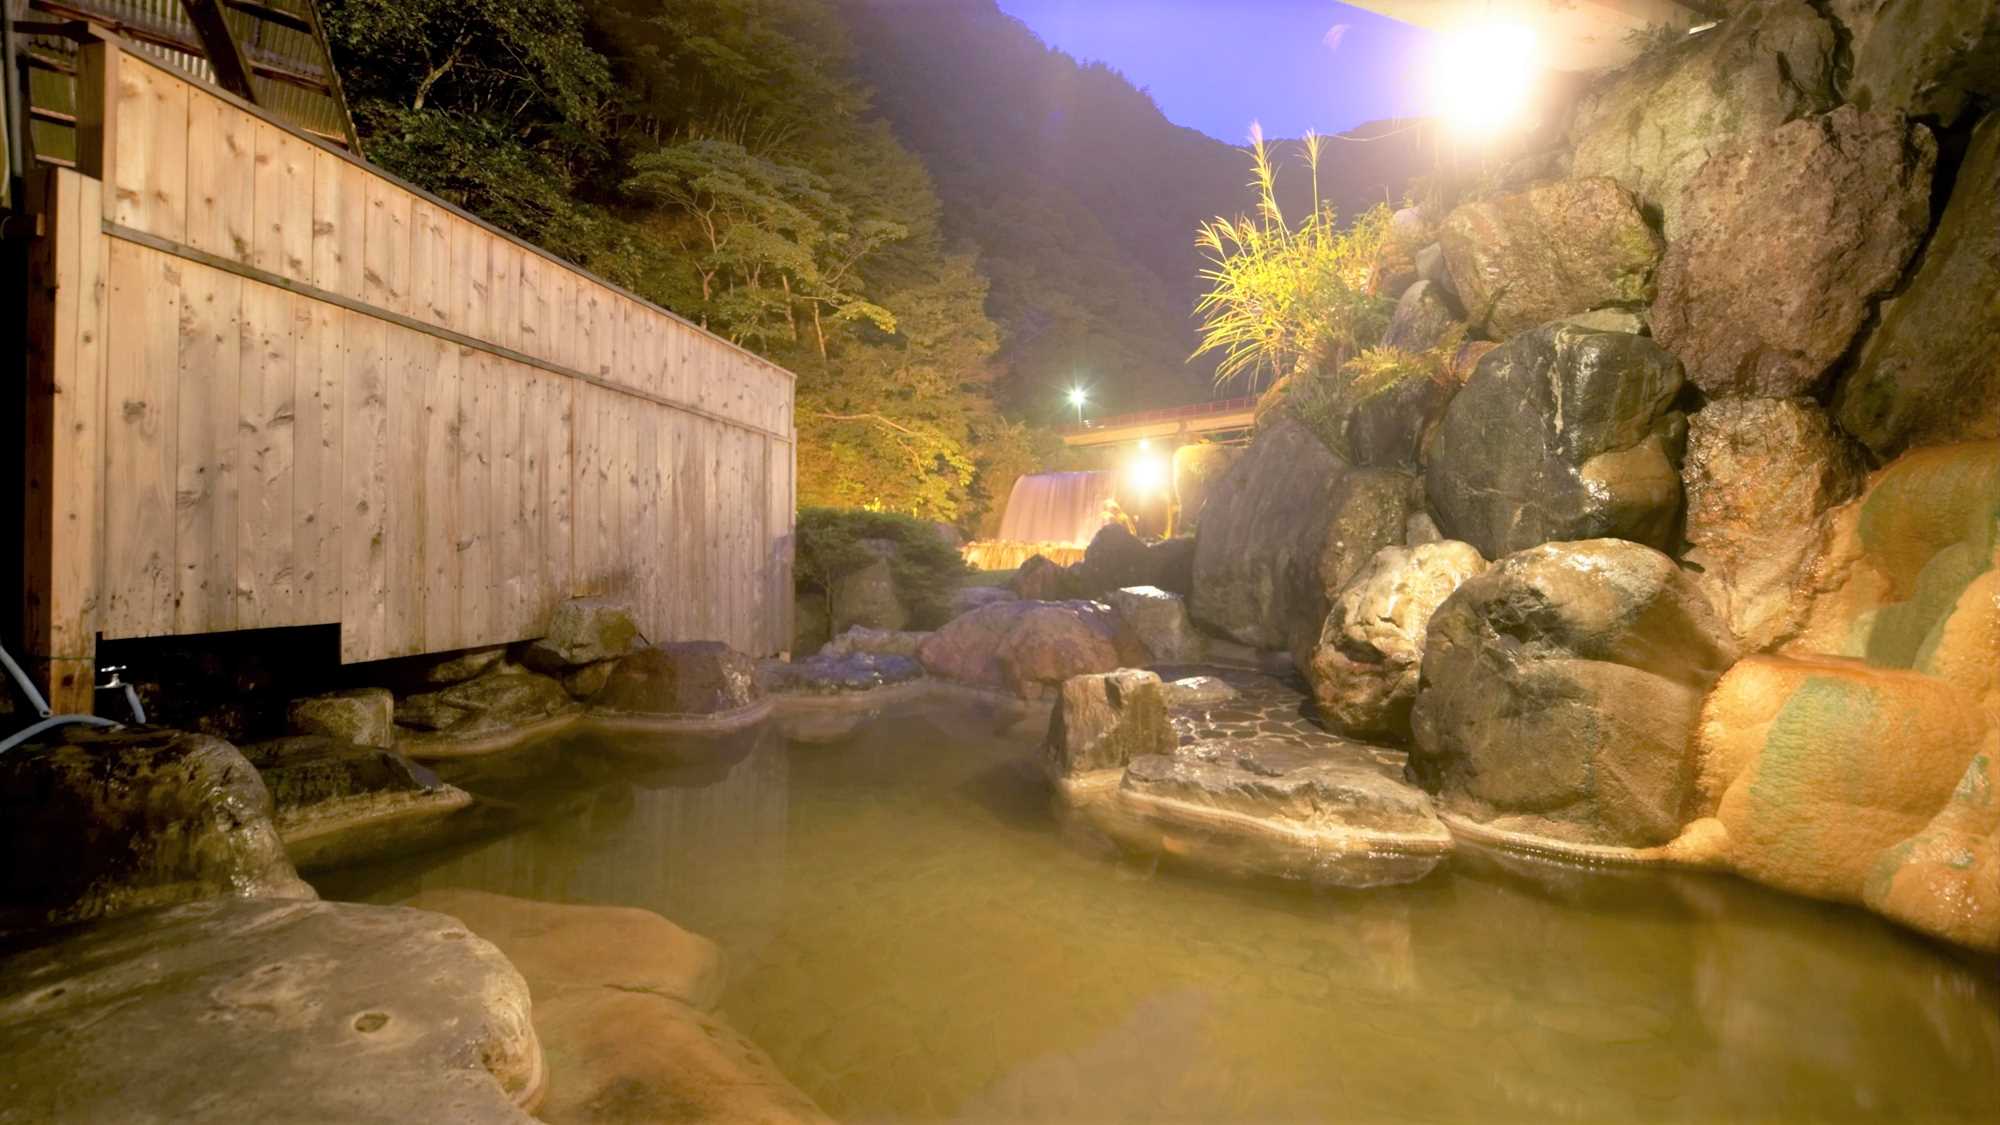 【５つのお湯めぐり　露天岩風呂】野趣あふれる露天風呂です。小川のせせらぎが耳に心地よく響きます。